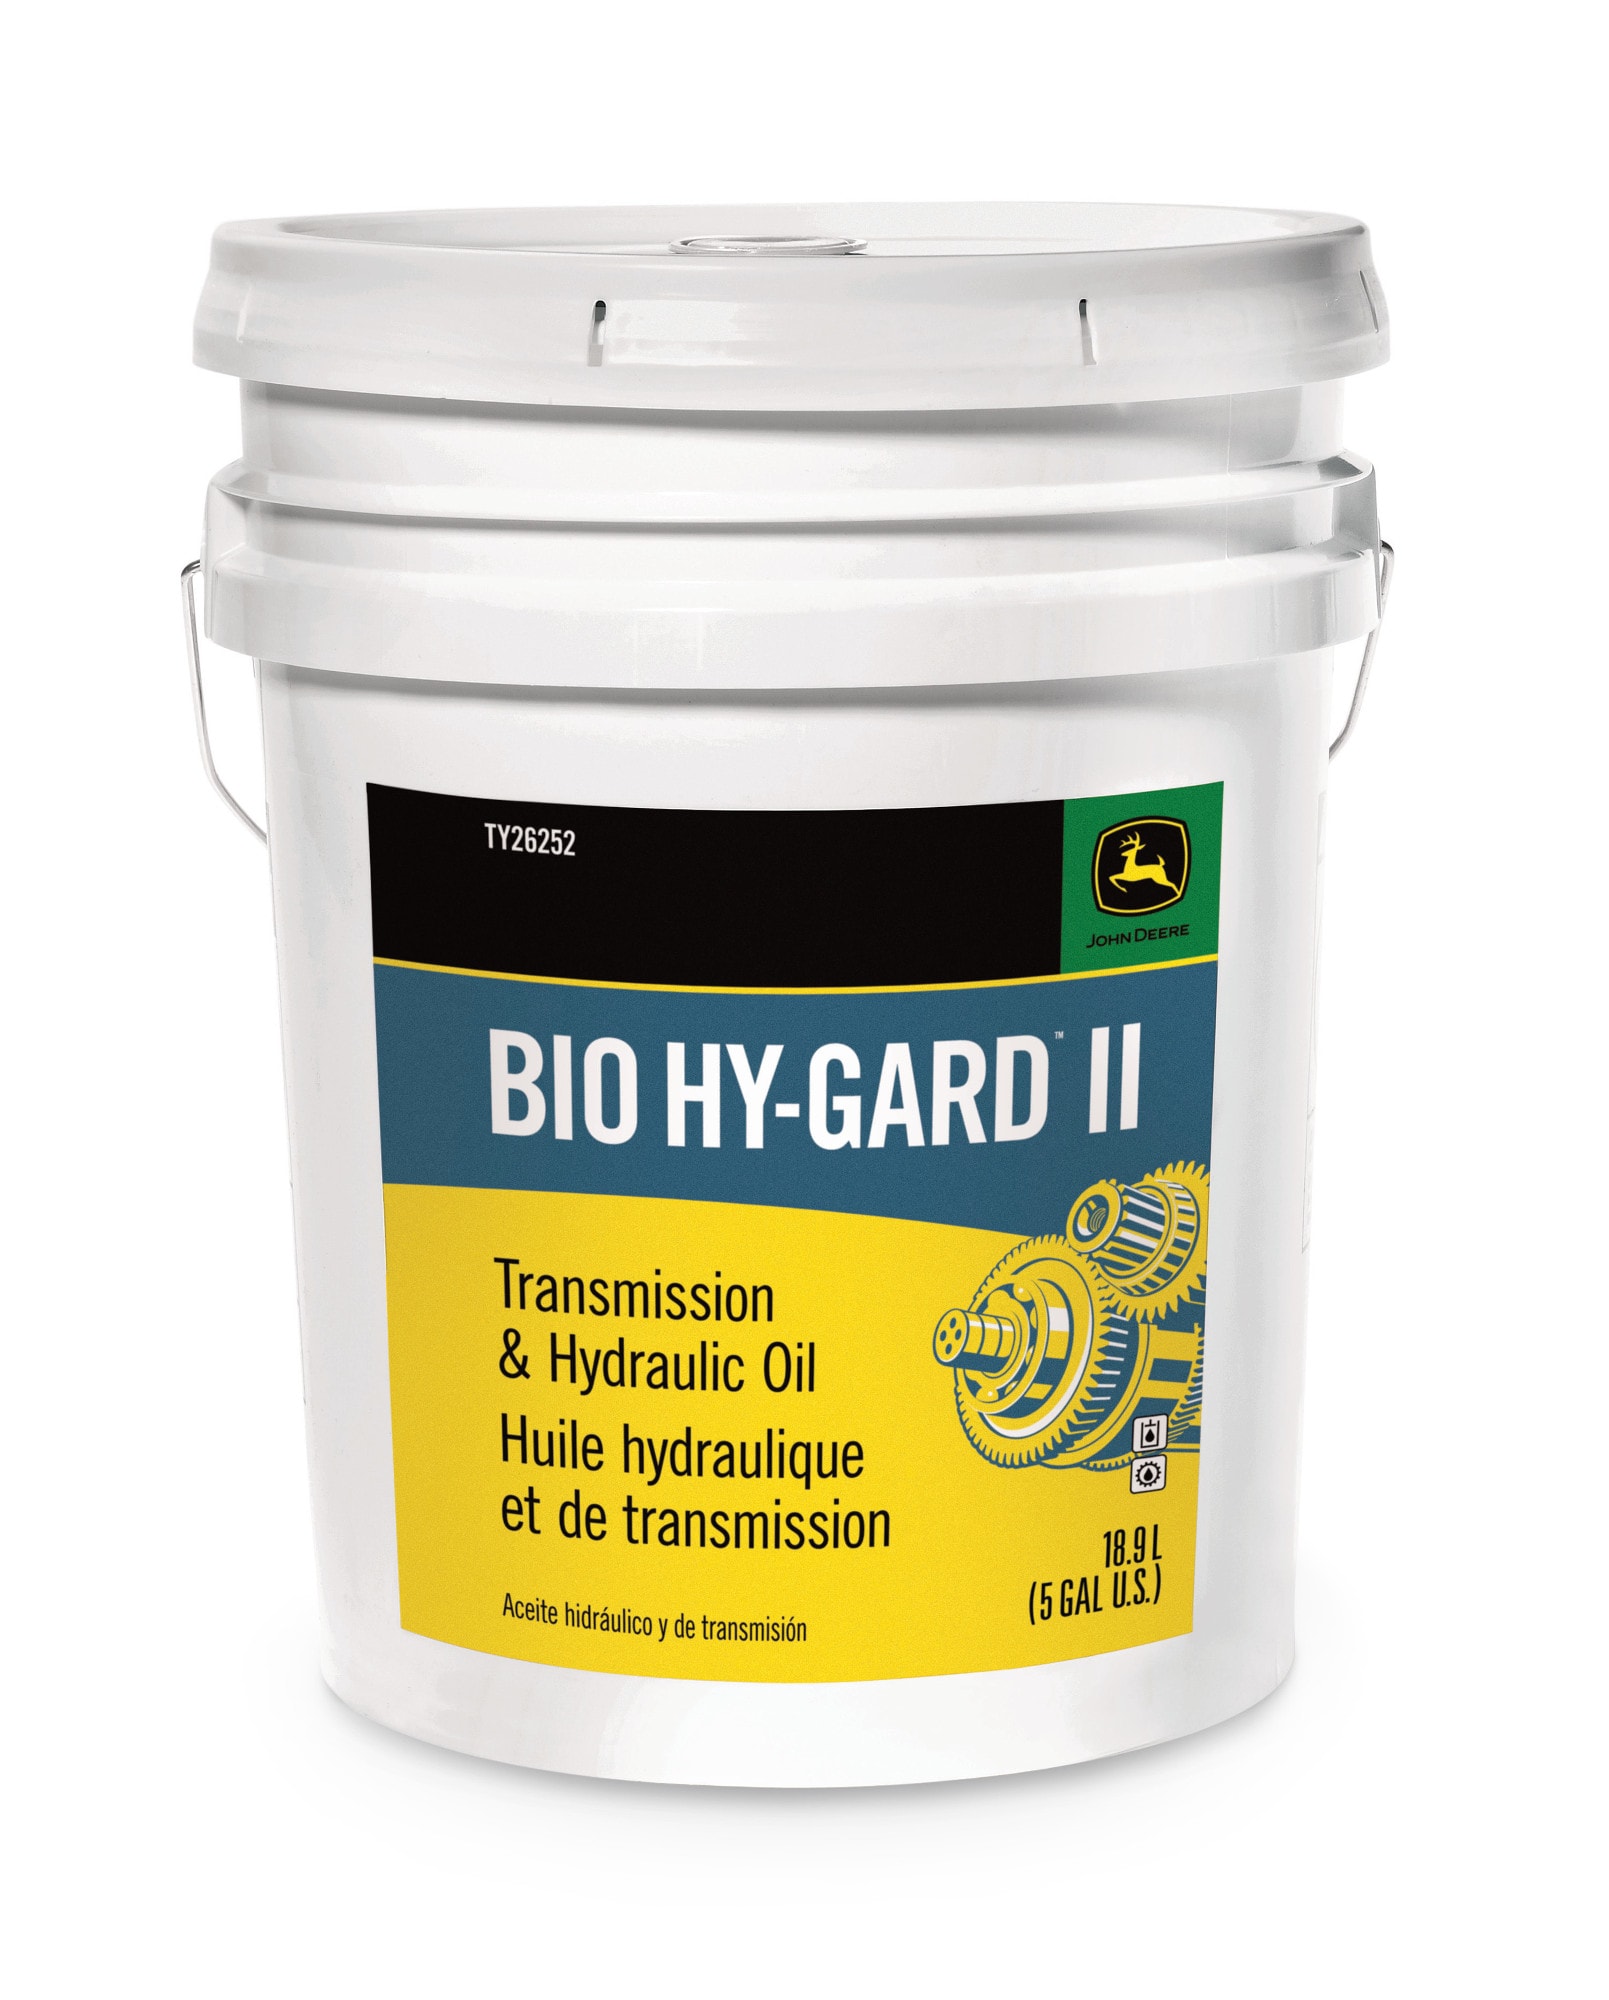 Bio Hy-Gard II Transmission and Hydraulic Oil